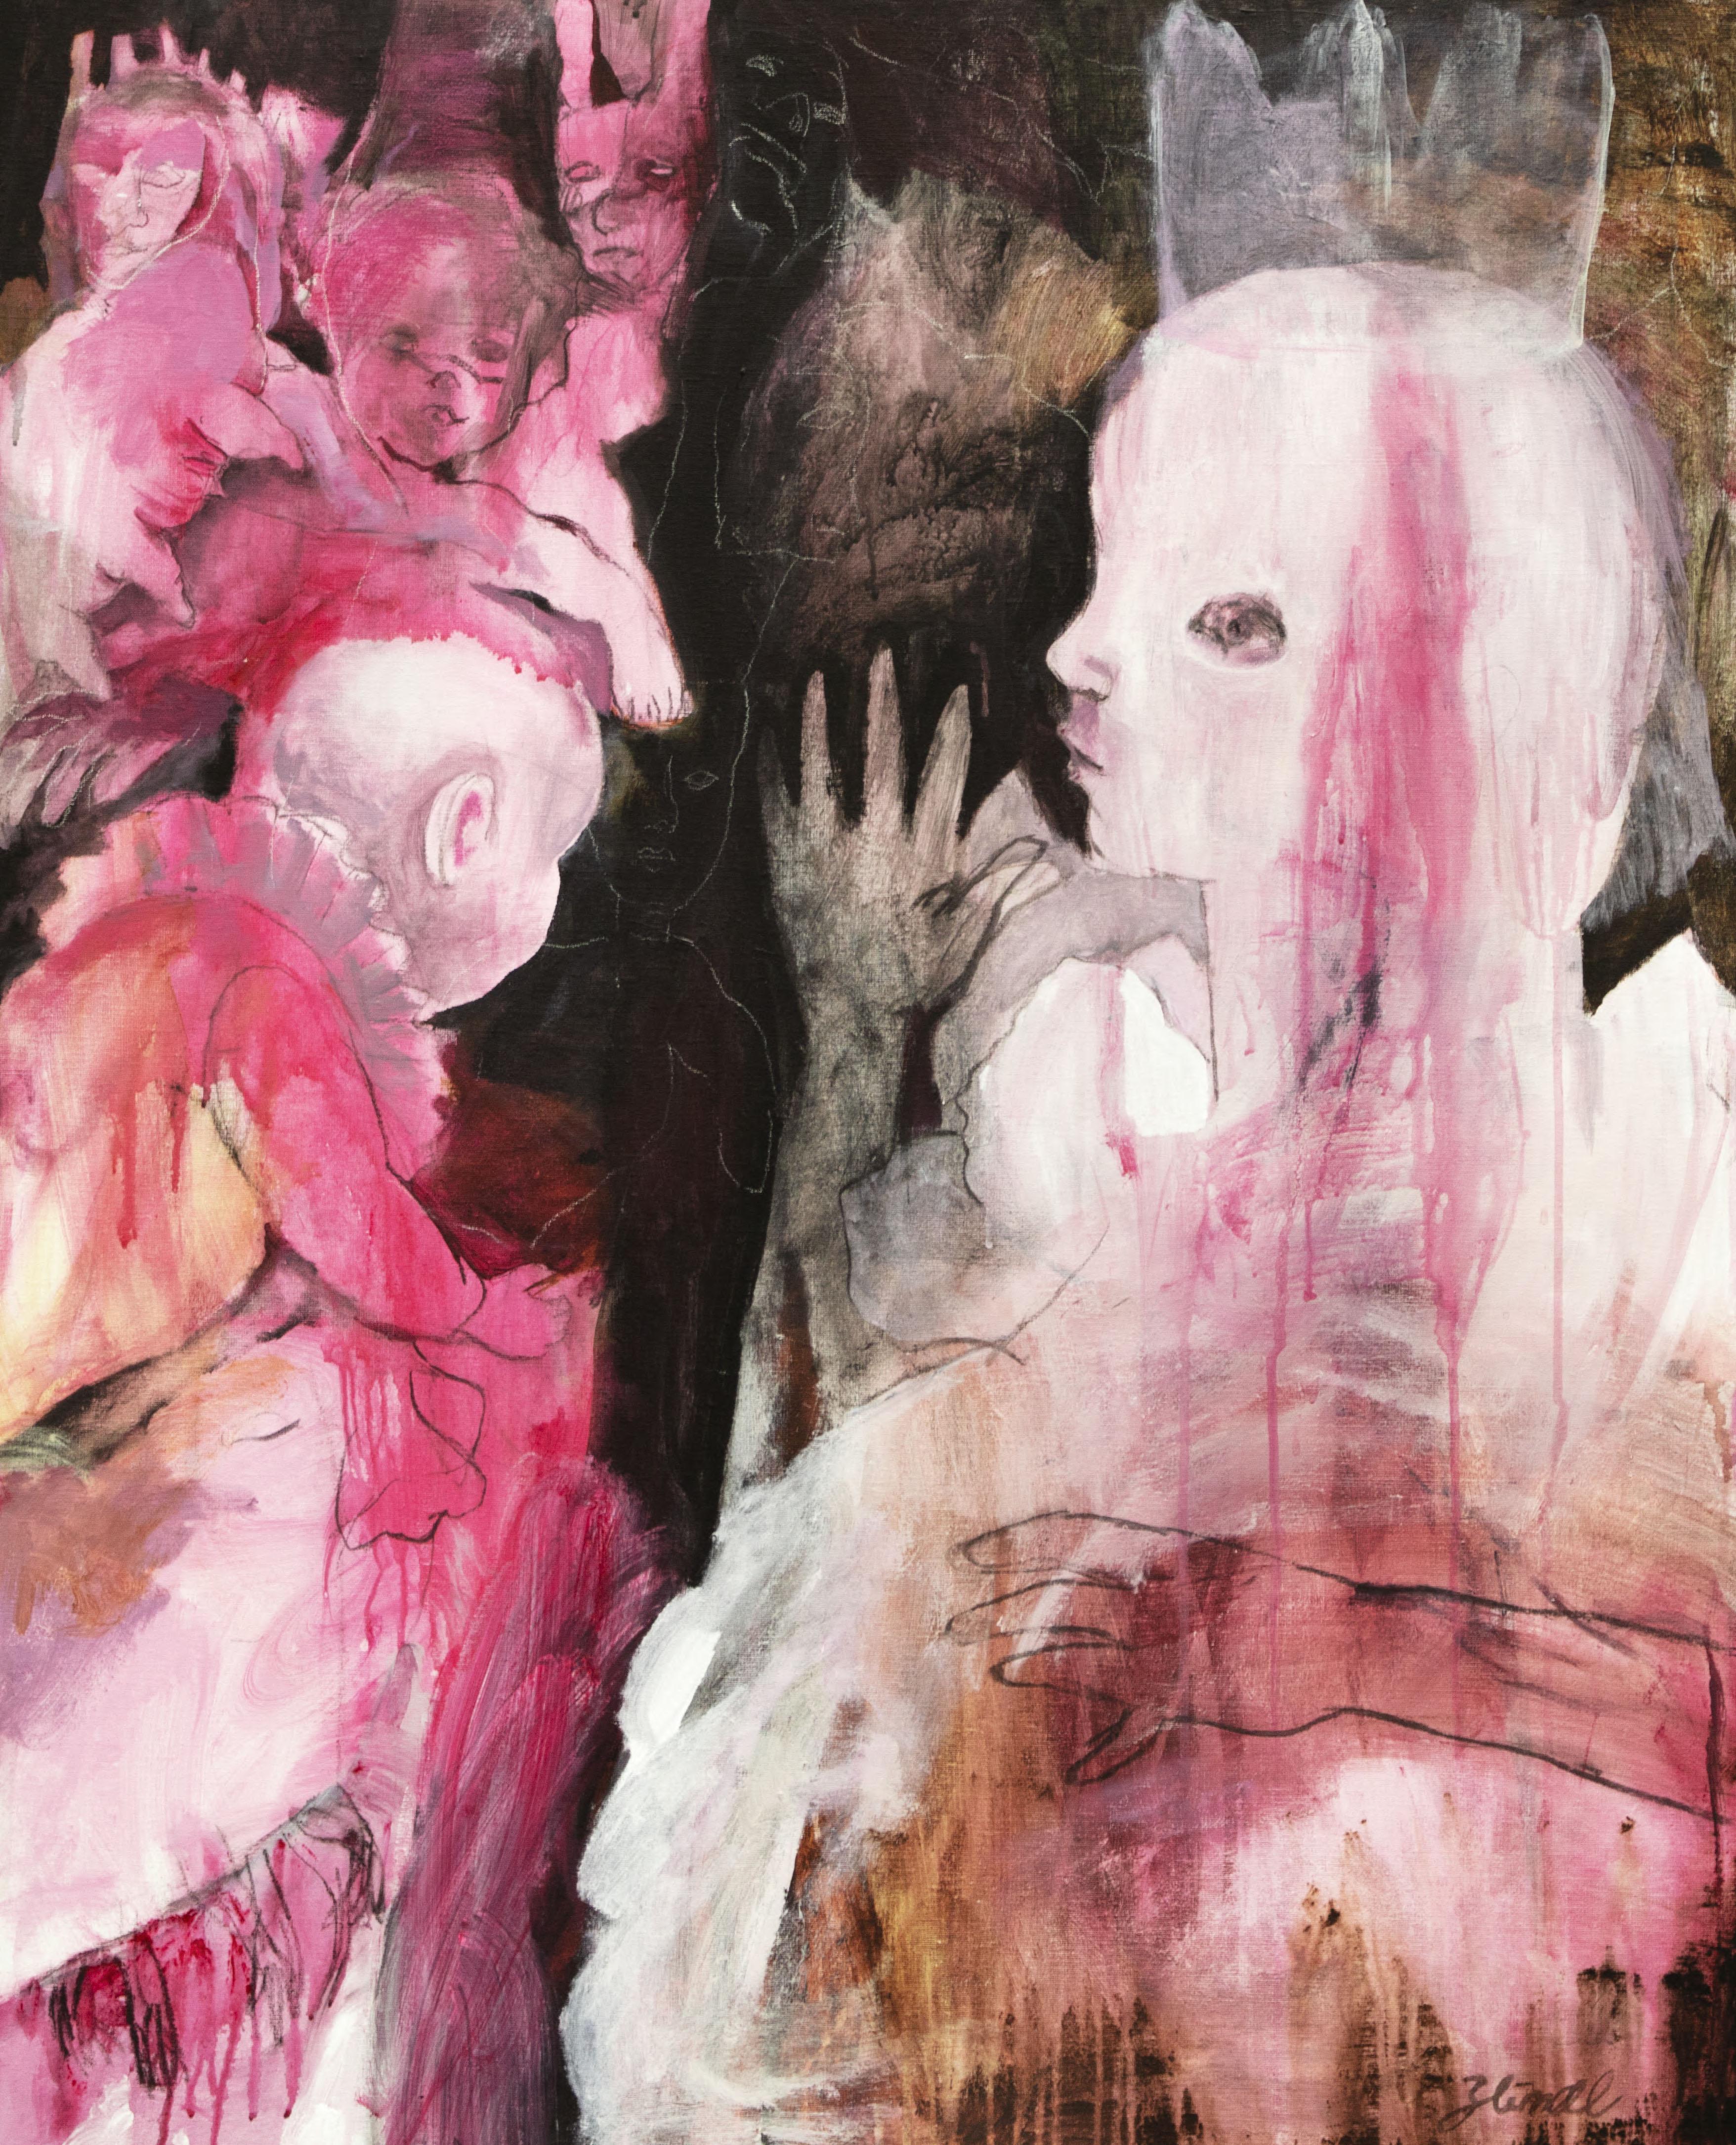 Peinture acrylique sur toile
Signé à la main en bas à droite par l'artiste

LE PAYS IMAGINAIRE DE ZAHRA ZEINALI

" Au fil du temps, Zahra Zeinali développe son univers, qui évolue lentement au gré de l'inconscient, une vaste vie souterraine,